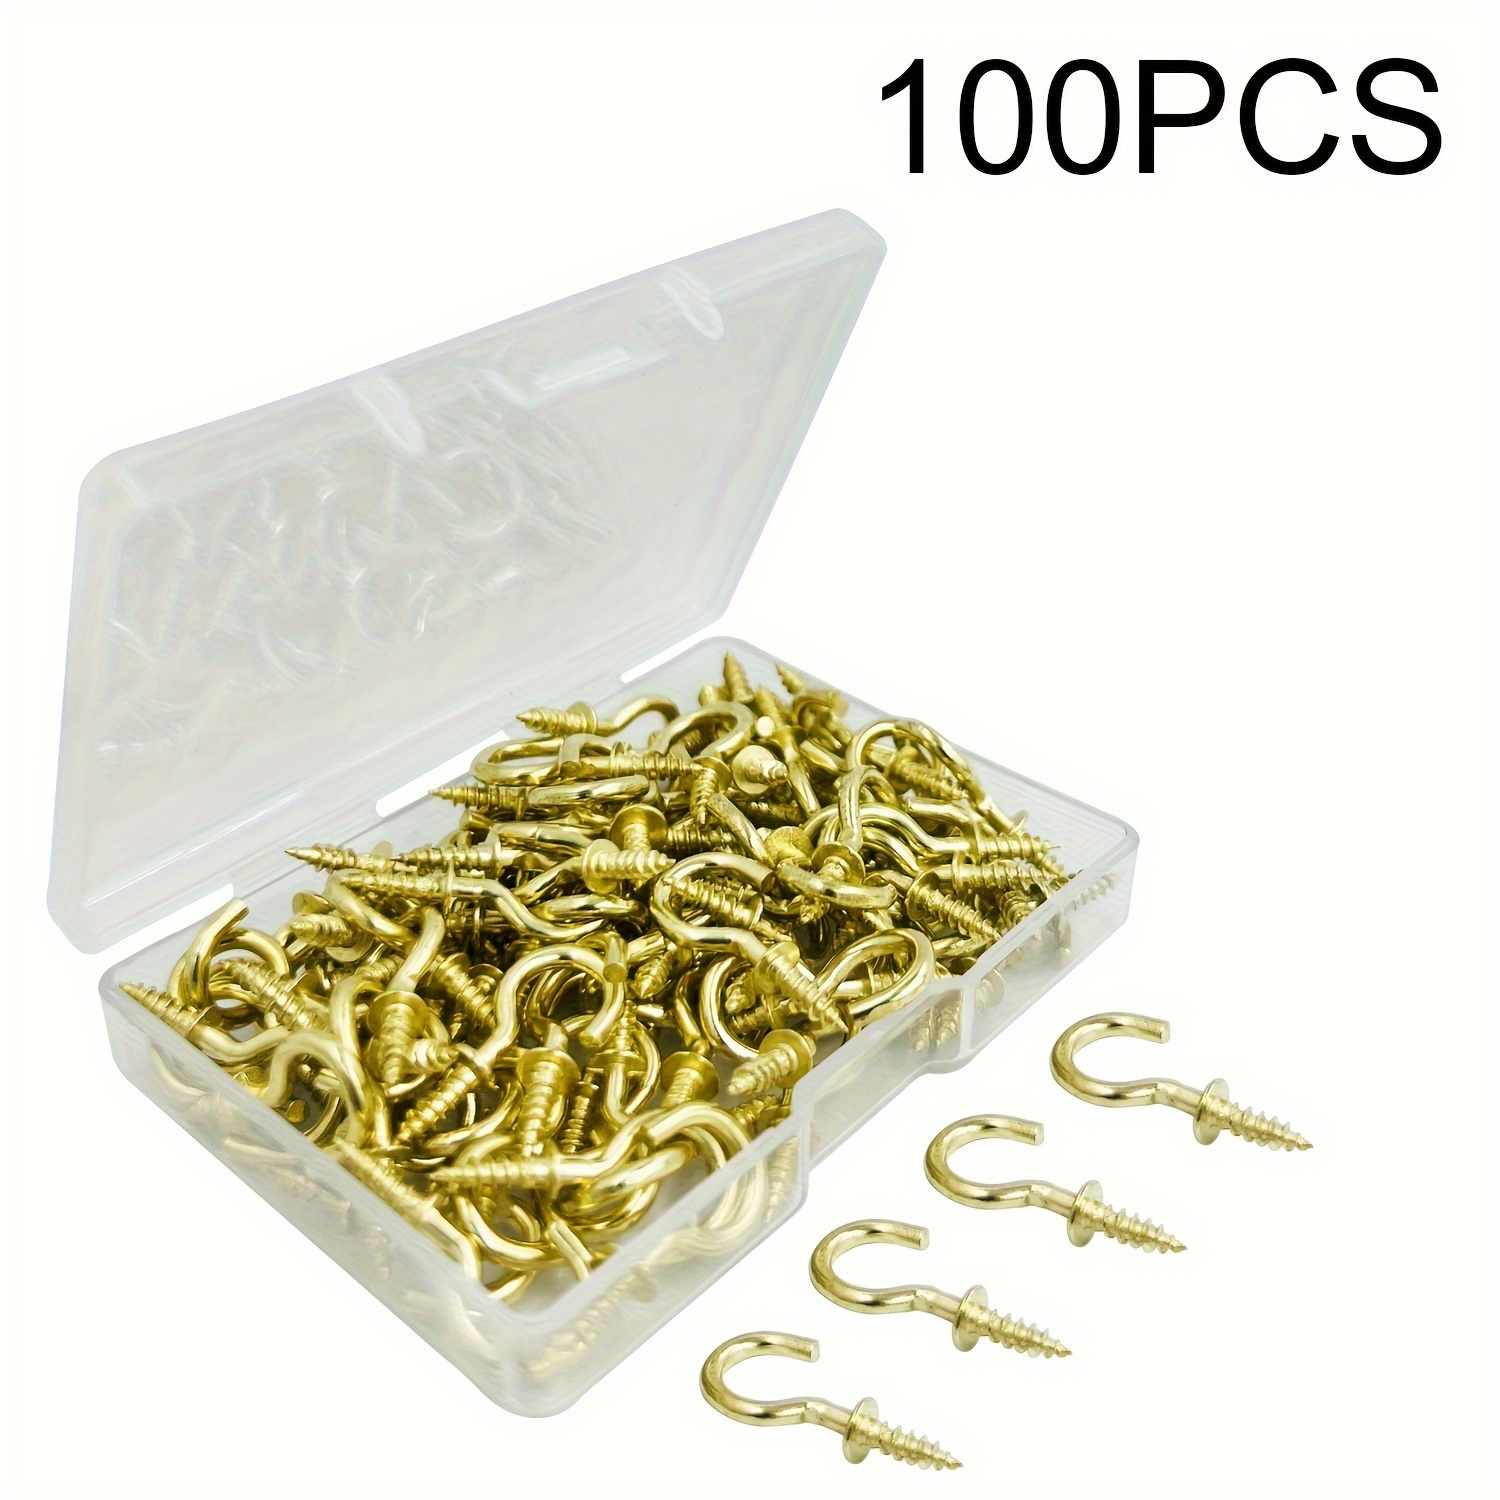 100 Pcs Small Screw Hooks, 1/2 Inch Black Mini Screw in Jewelry